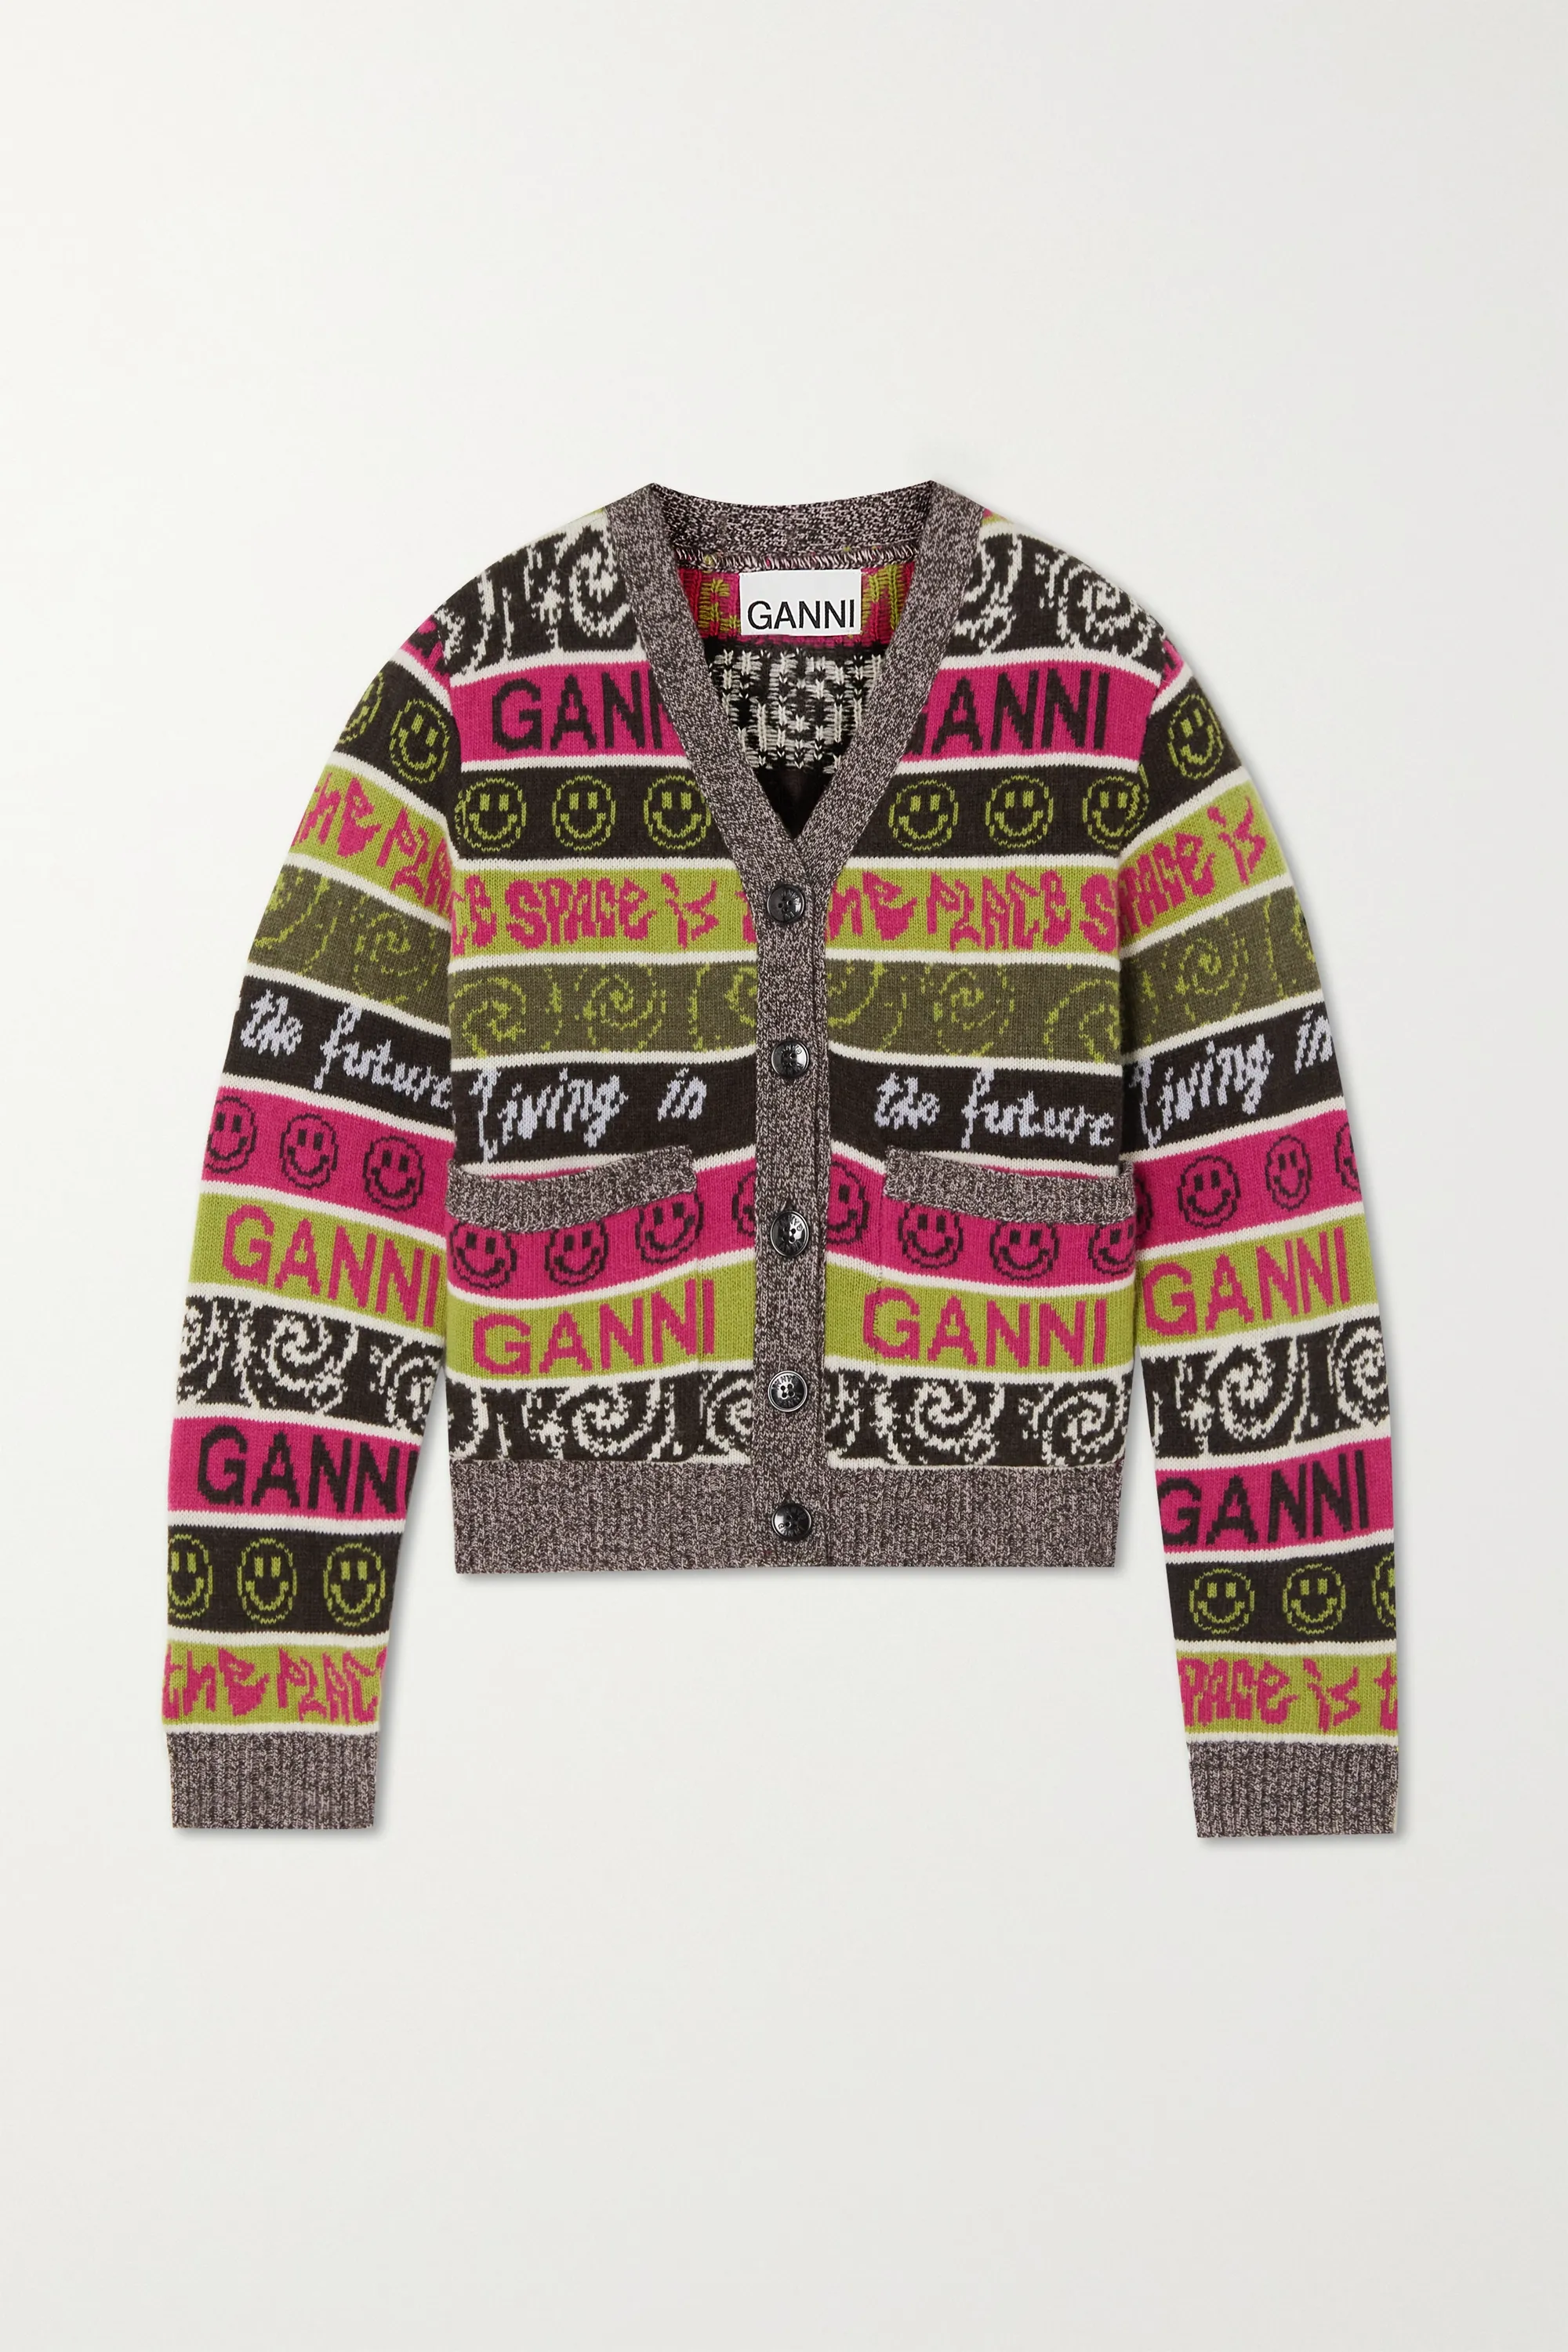 Ganni Wool Mix Knit Cardigan